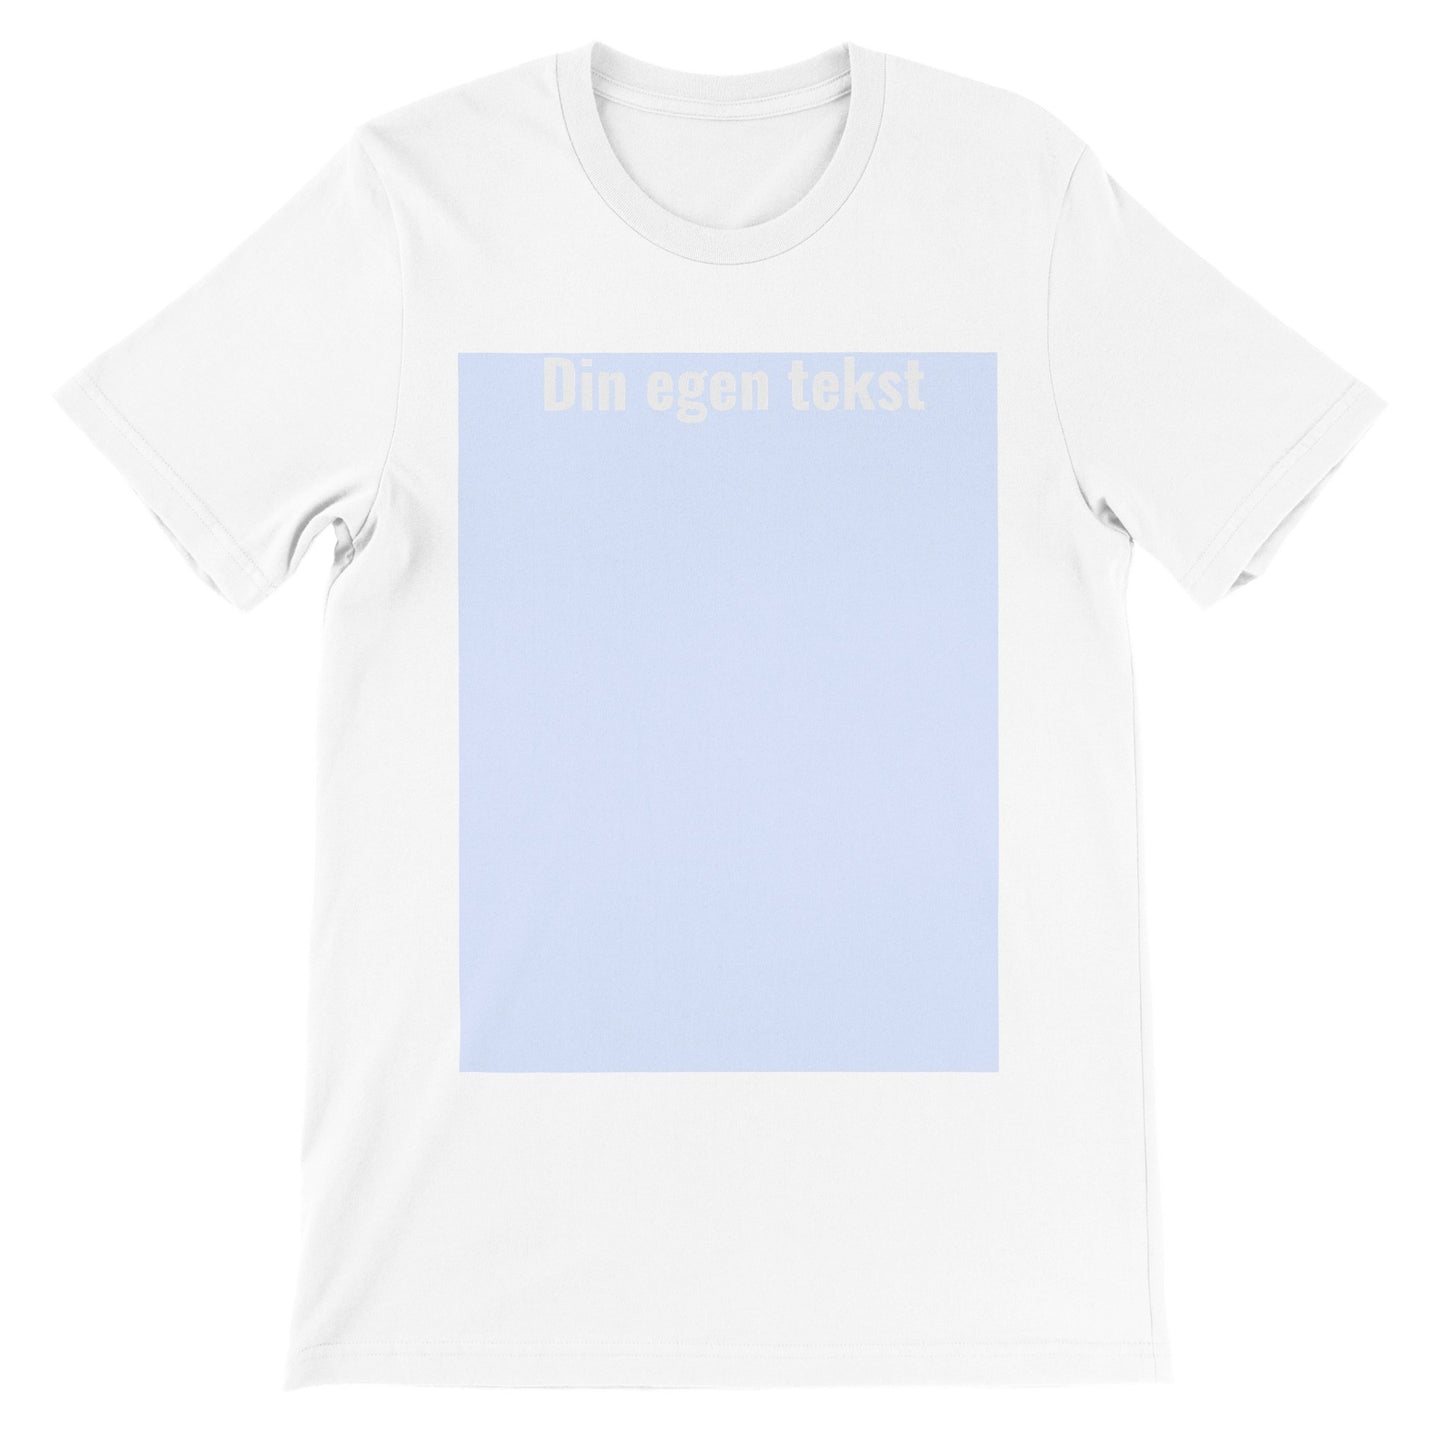 Selv T-shirt (eget billede eller (HVID) tekst ) Premium Unisex – Citatshirts.dk